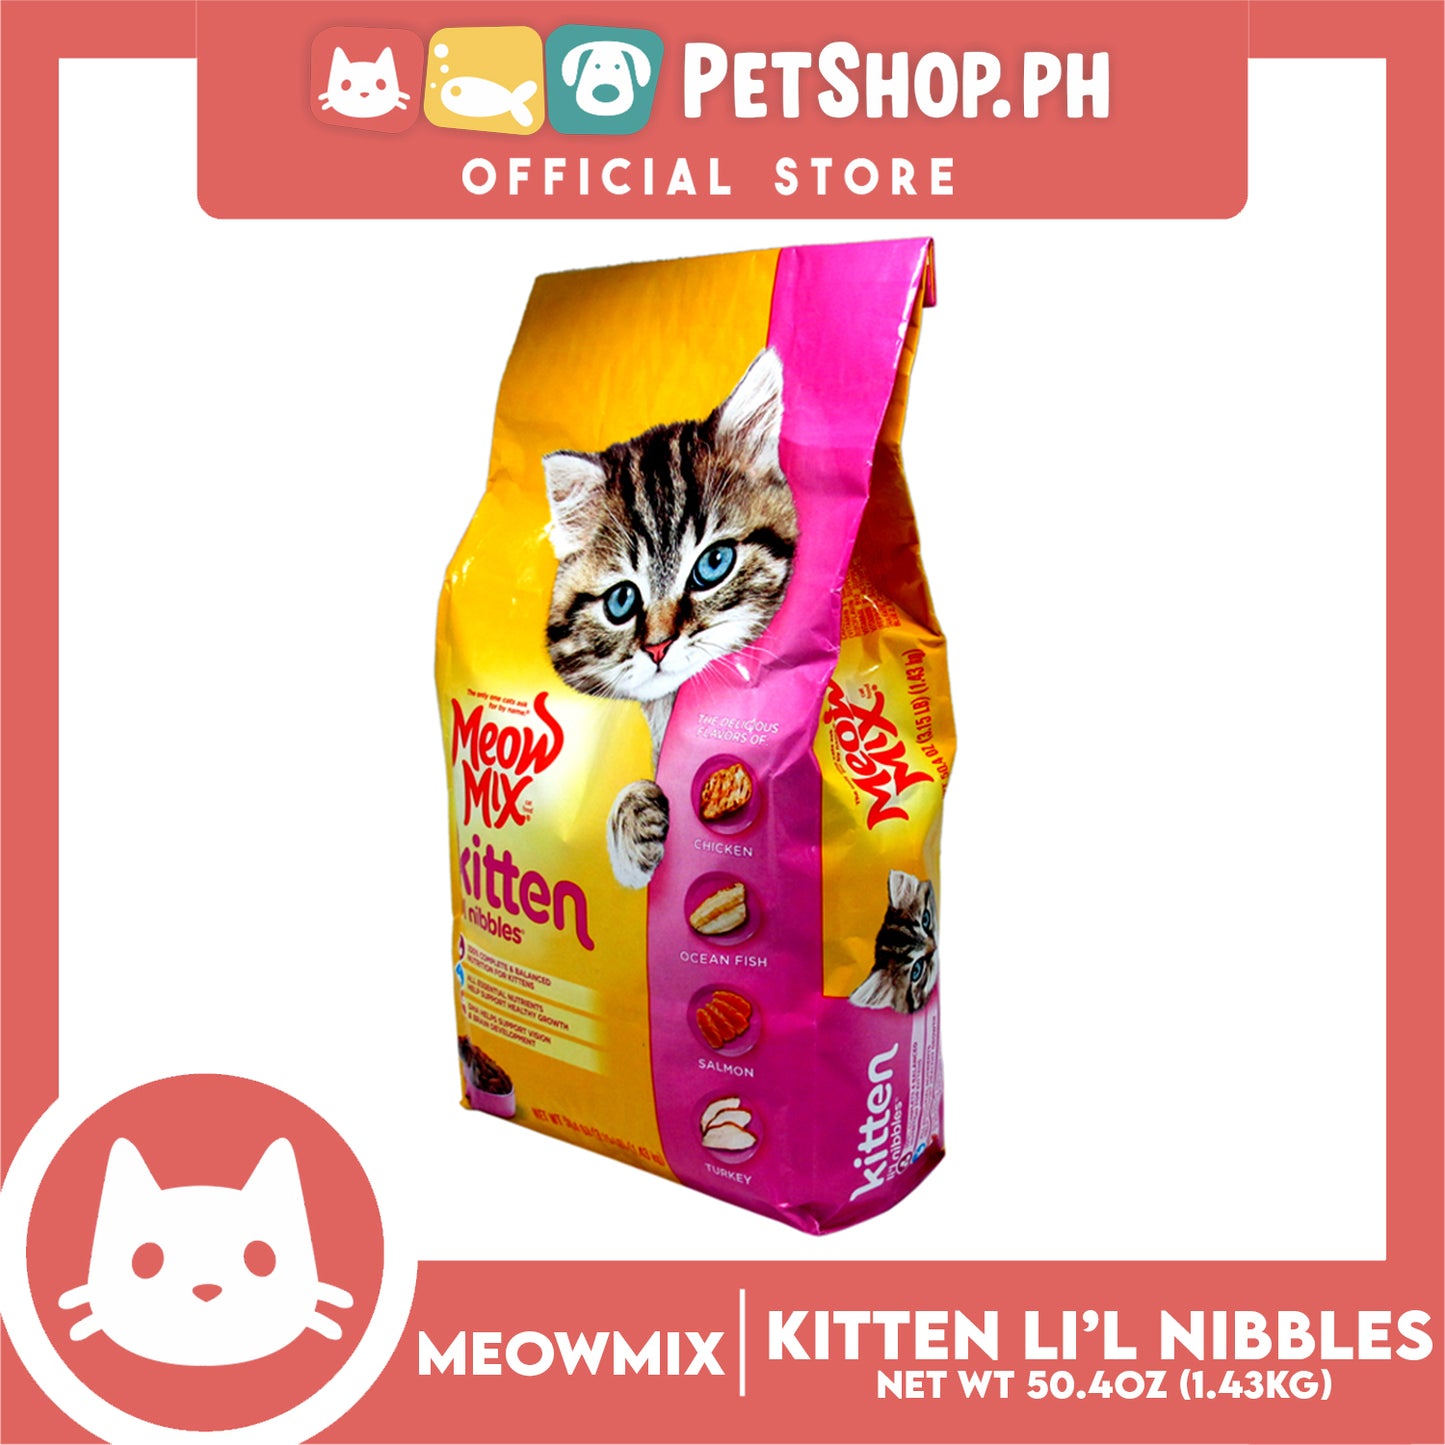 Meow Mix Kitten Li'l Nibbles